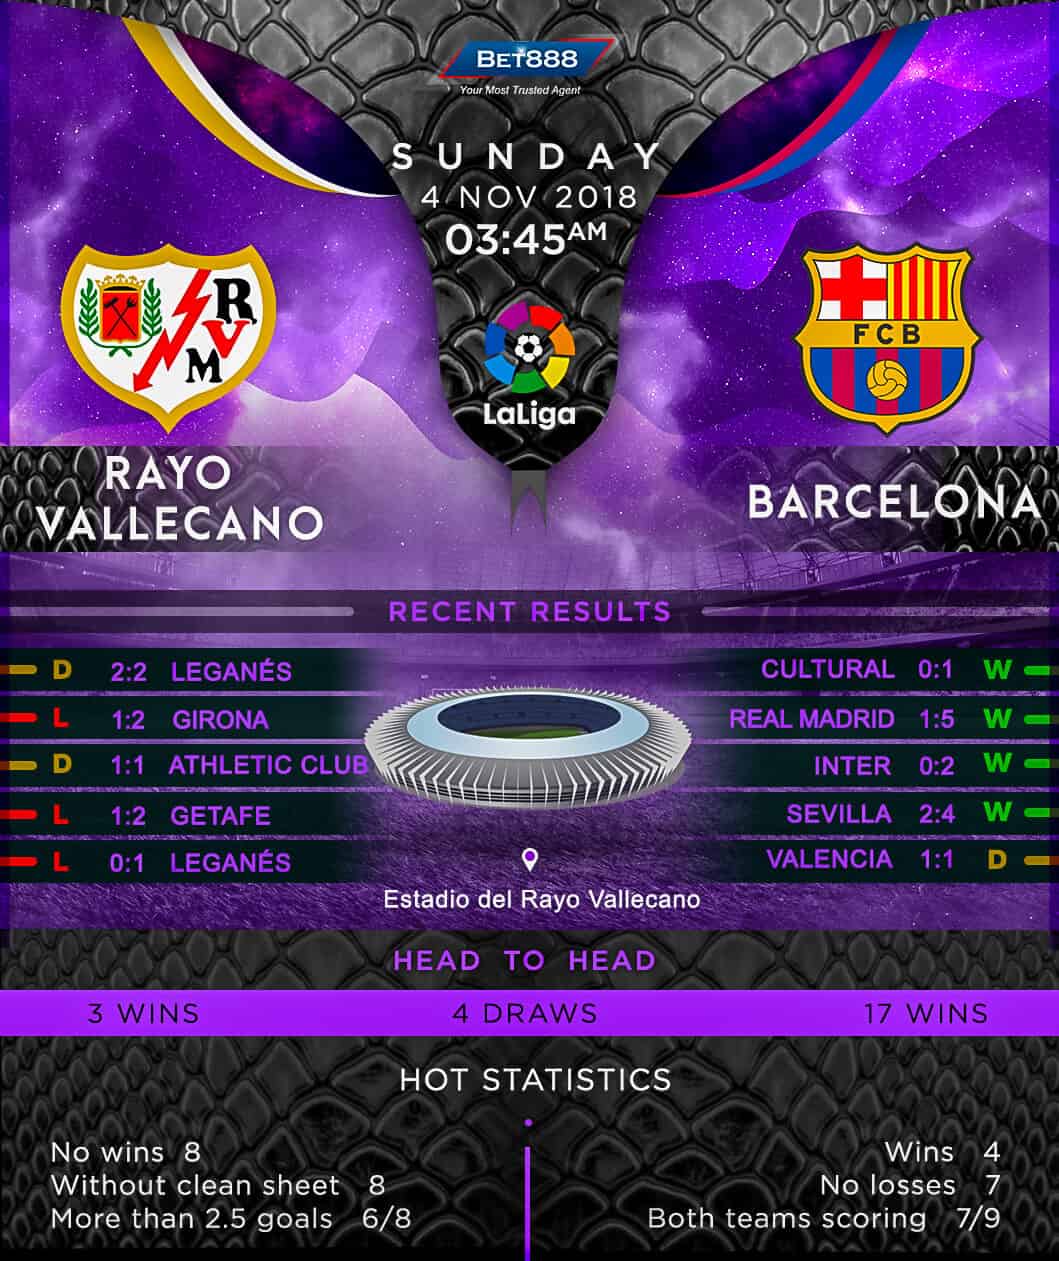 Rayo Vallecano vs Barcelona 04/11/18